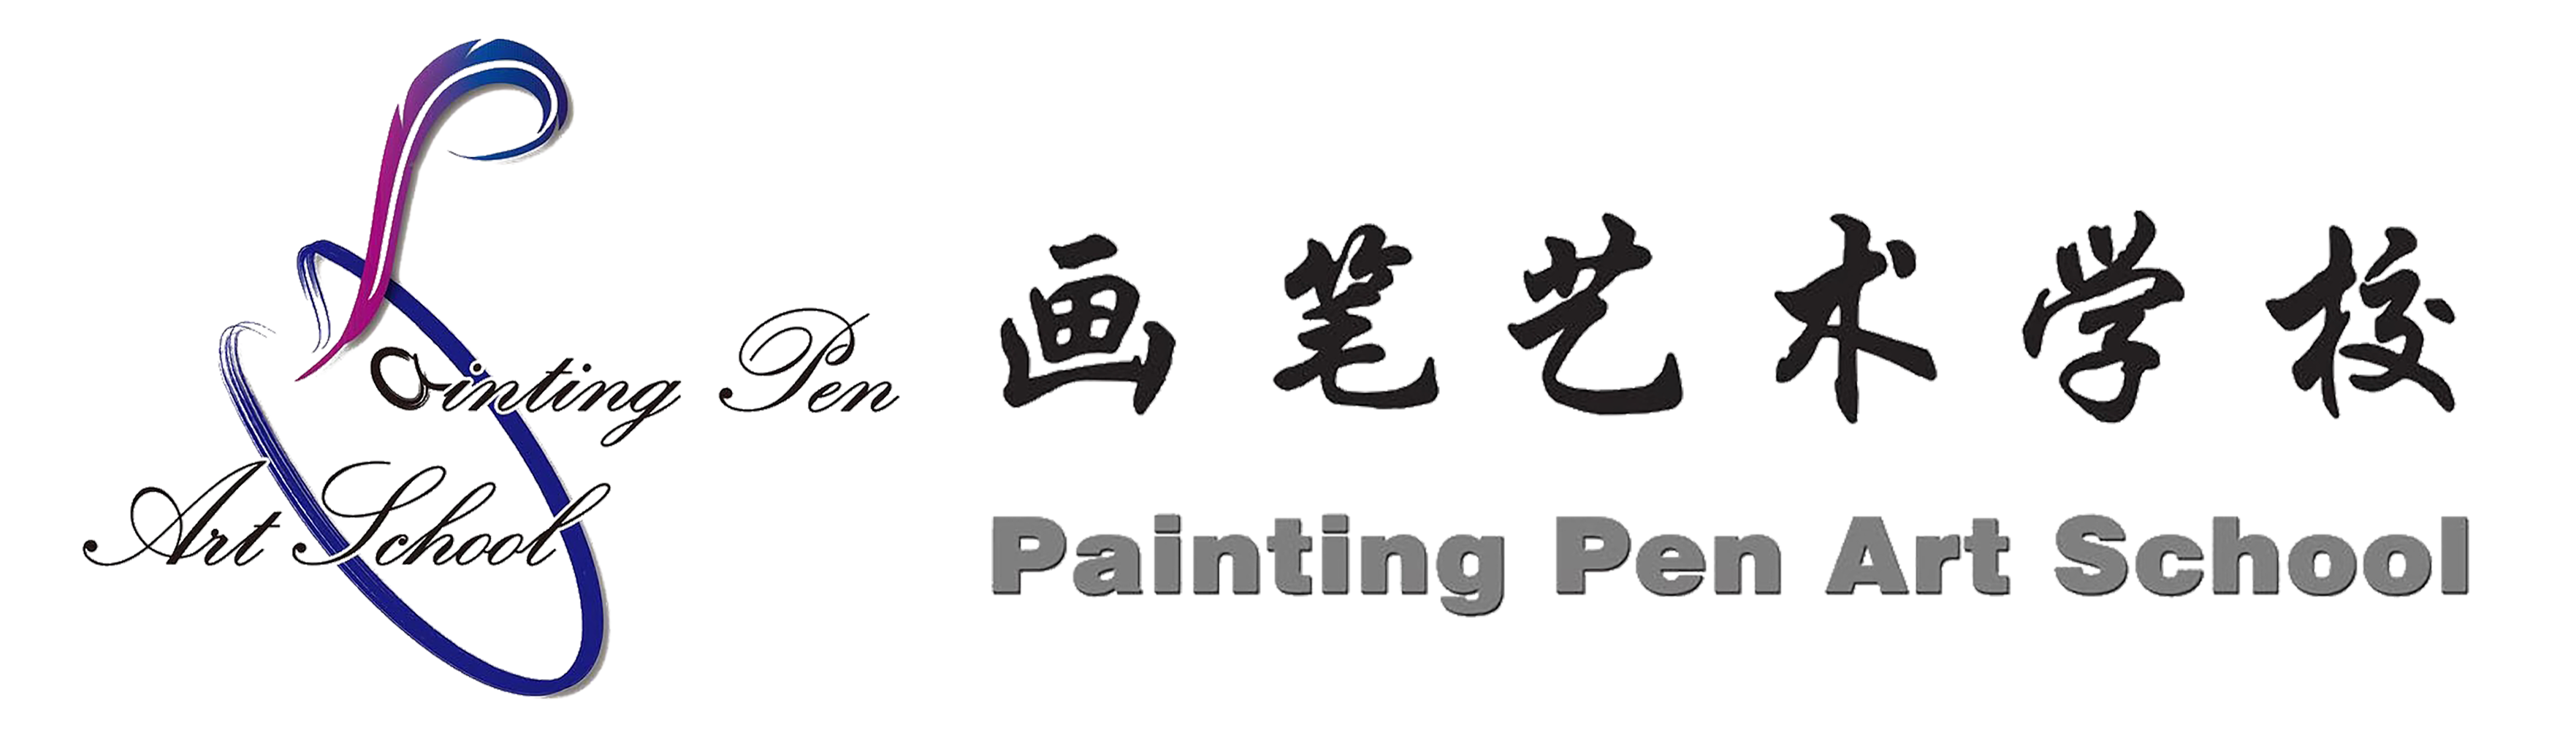 Painting Pen Art School